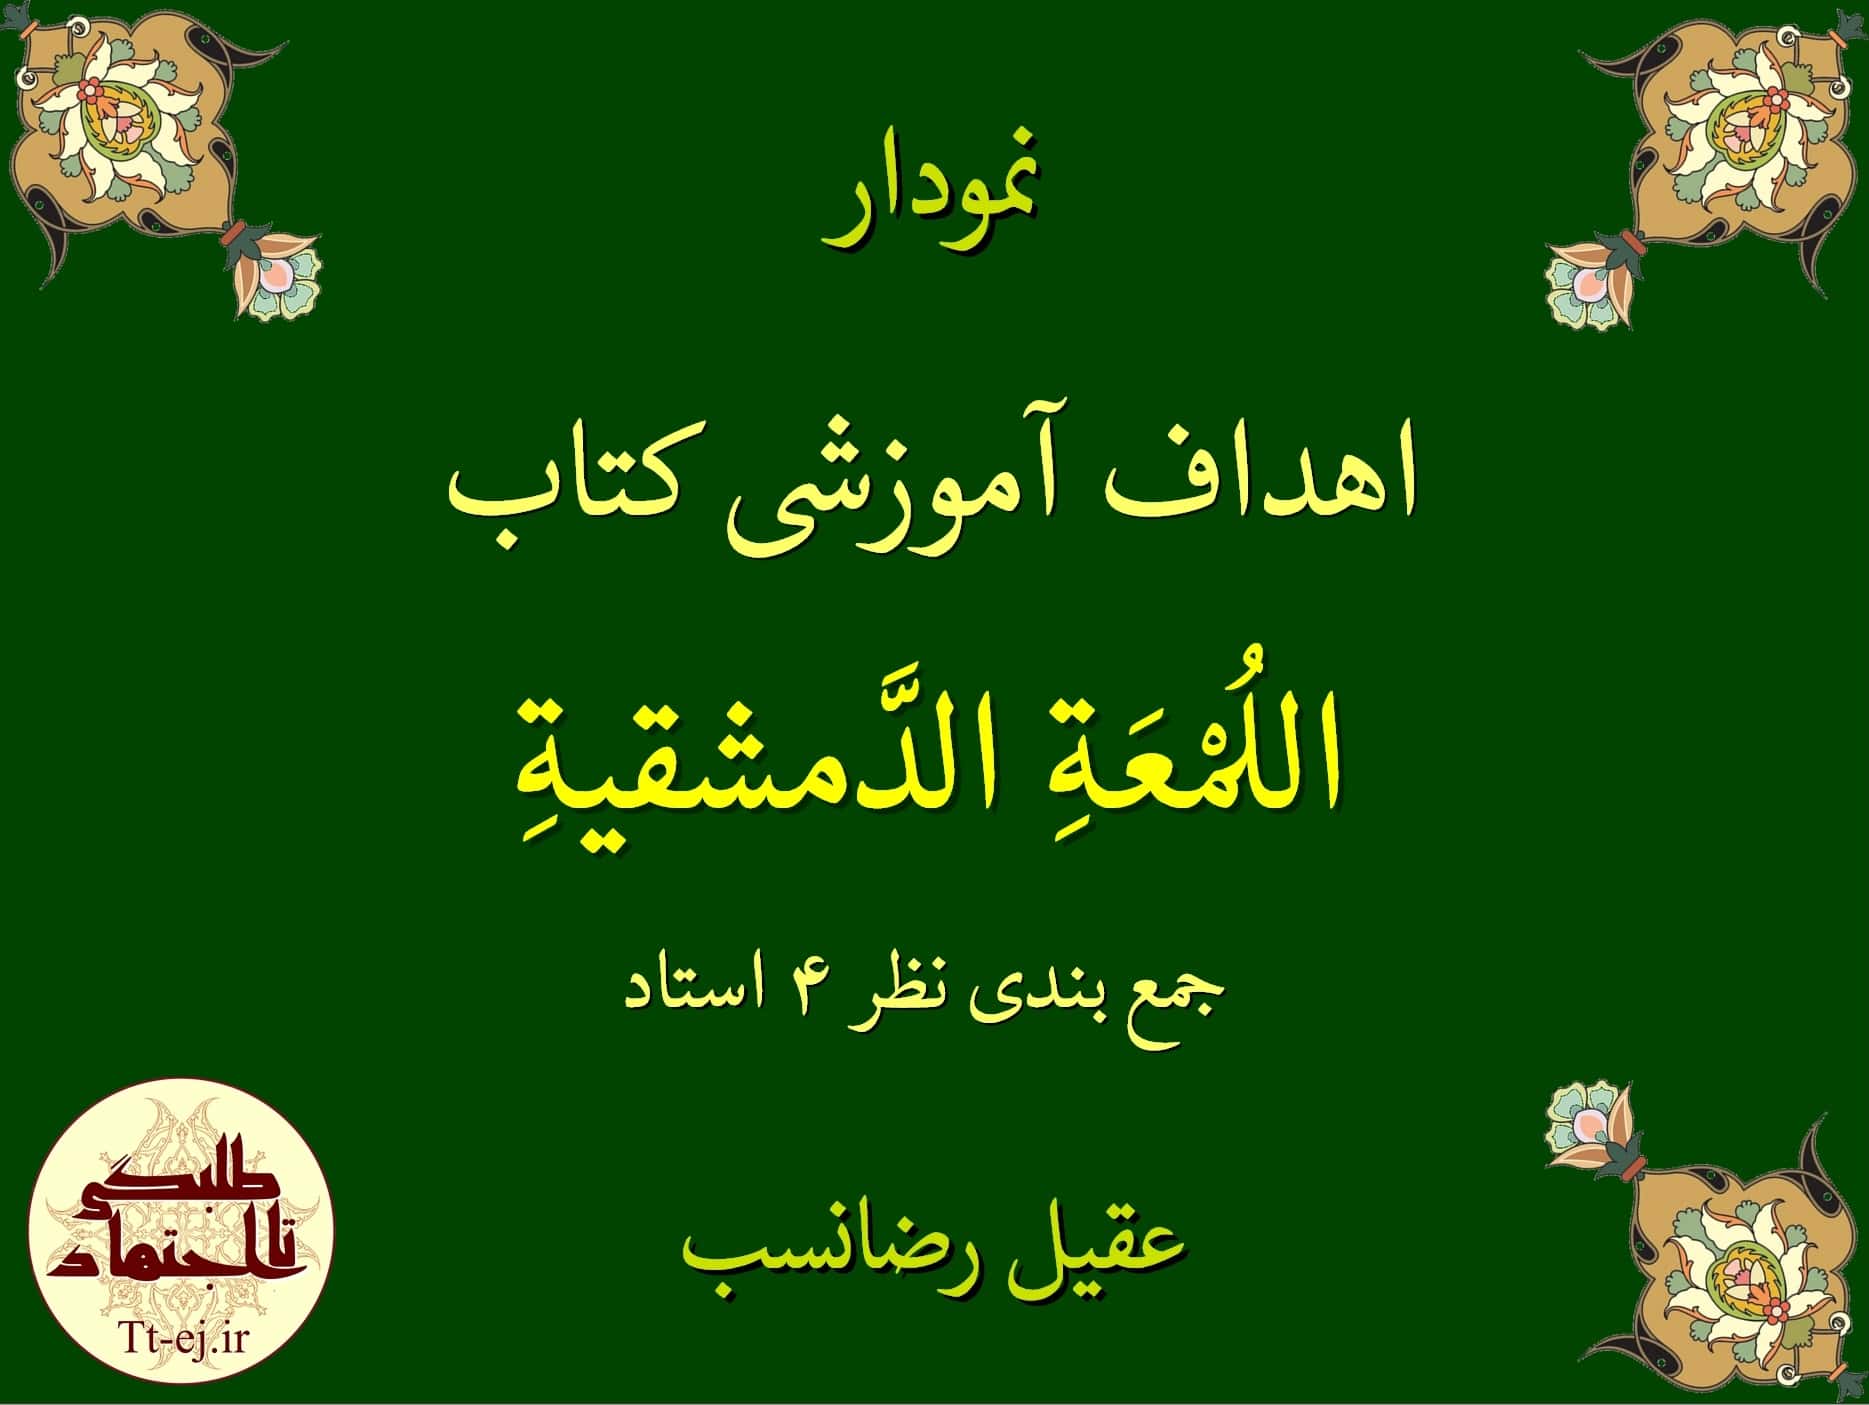 نمودار جمع بندی شده اهداف آموزشی کتاب فقهی «الروضه البهیه فی شرح اللمعه الدمشقیه» توسط 4 استاد